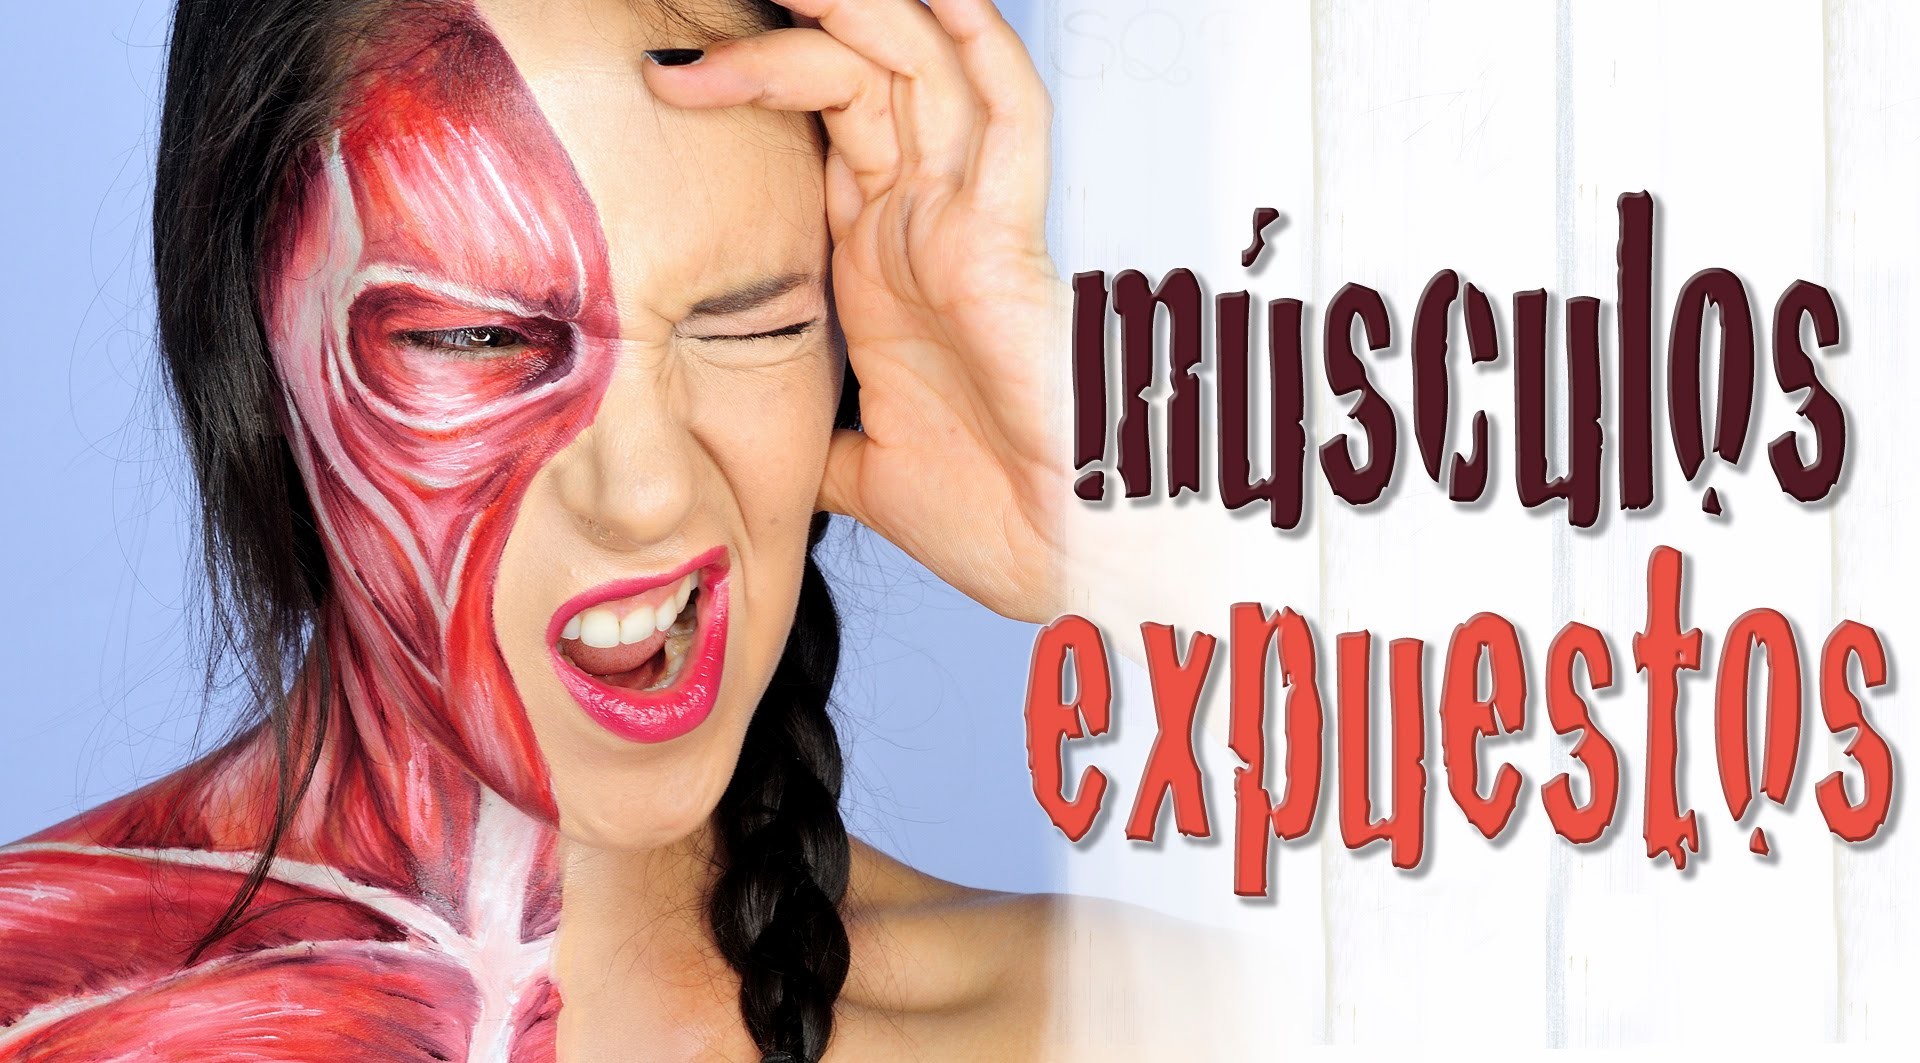 Maquillaje músculos expuestos Halloween Makeup FX #53 | Silvia Quiros